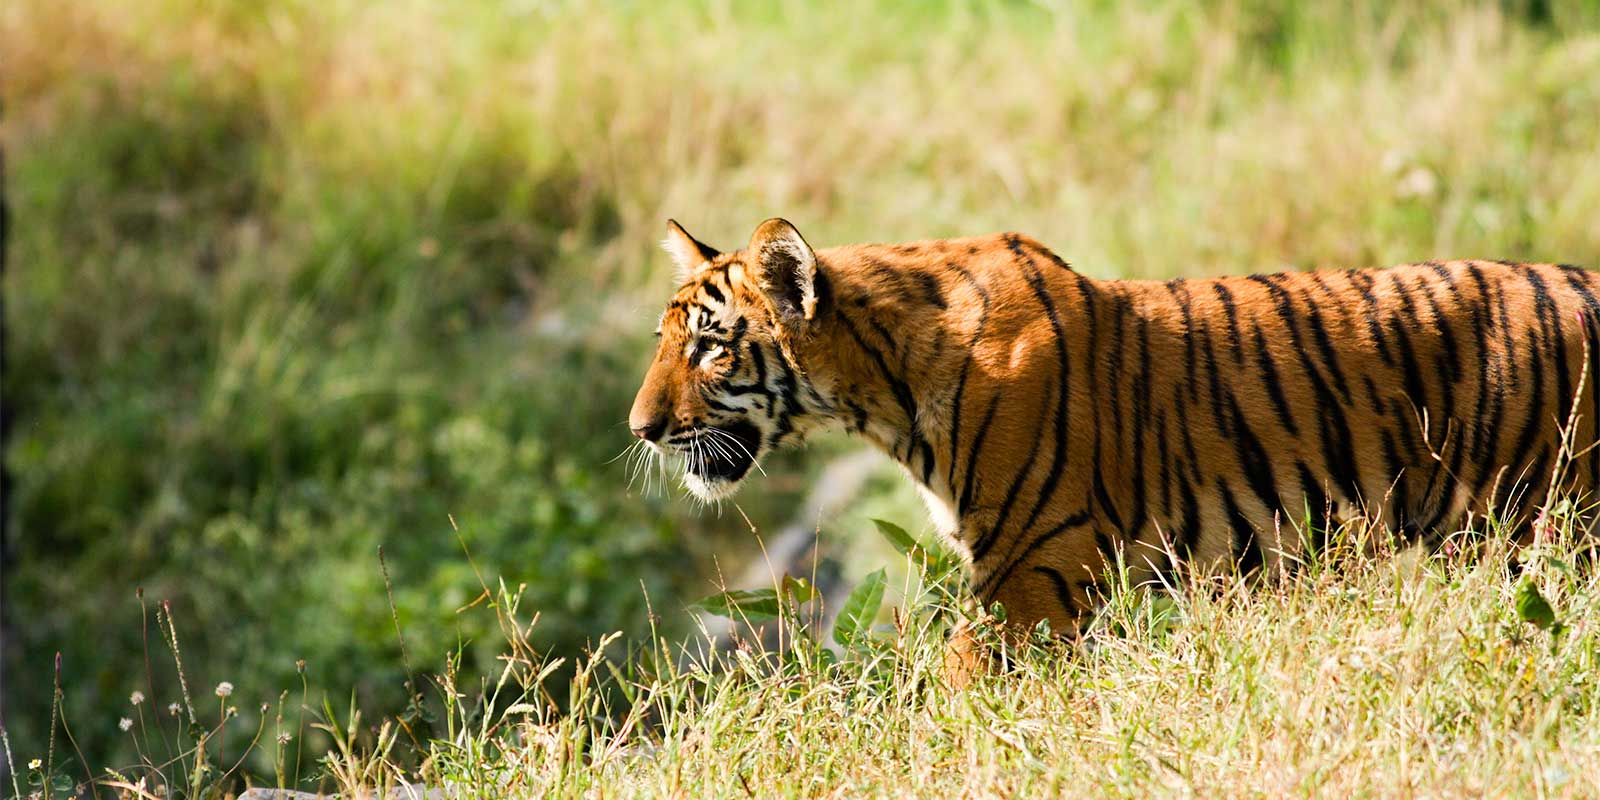 Tiger cub in India